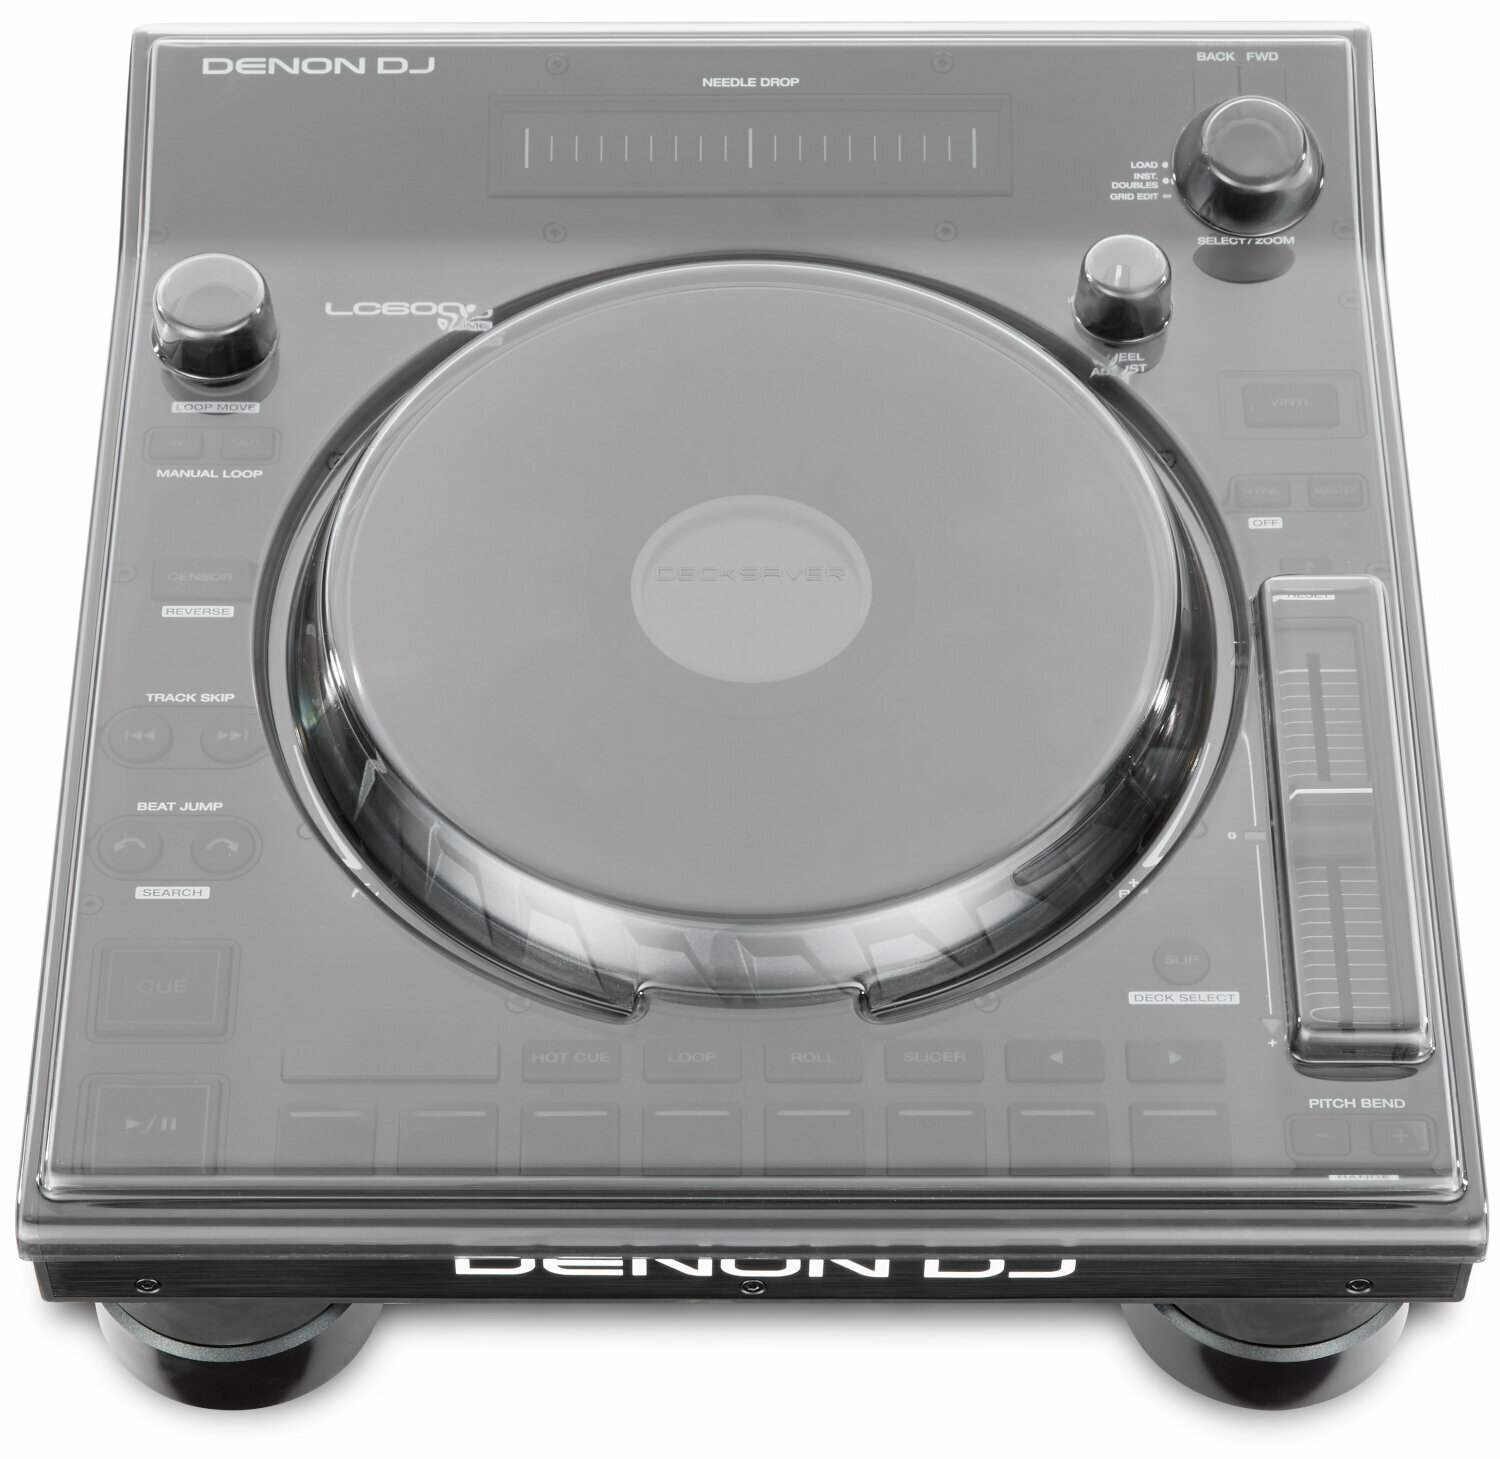 Ochranný kryt pro DJ přehrávač
 Decksaver Denon DJ LC6000 Prime